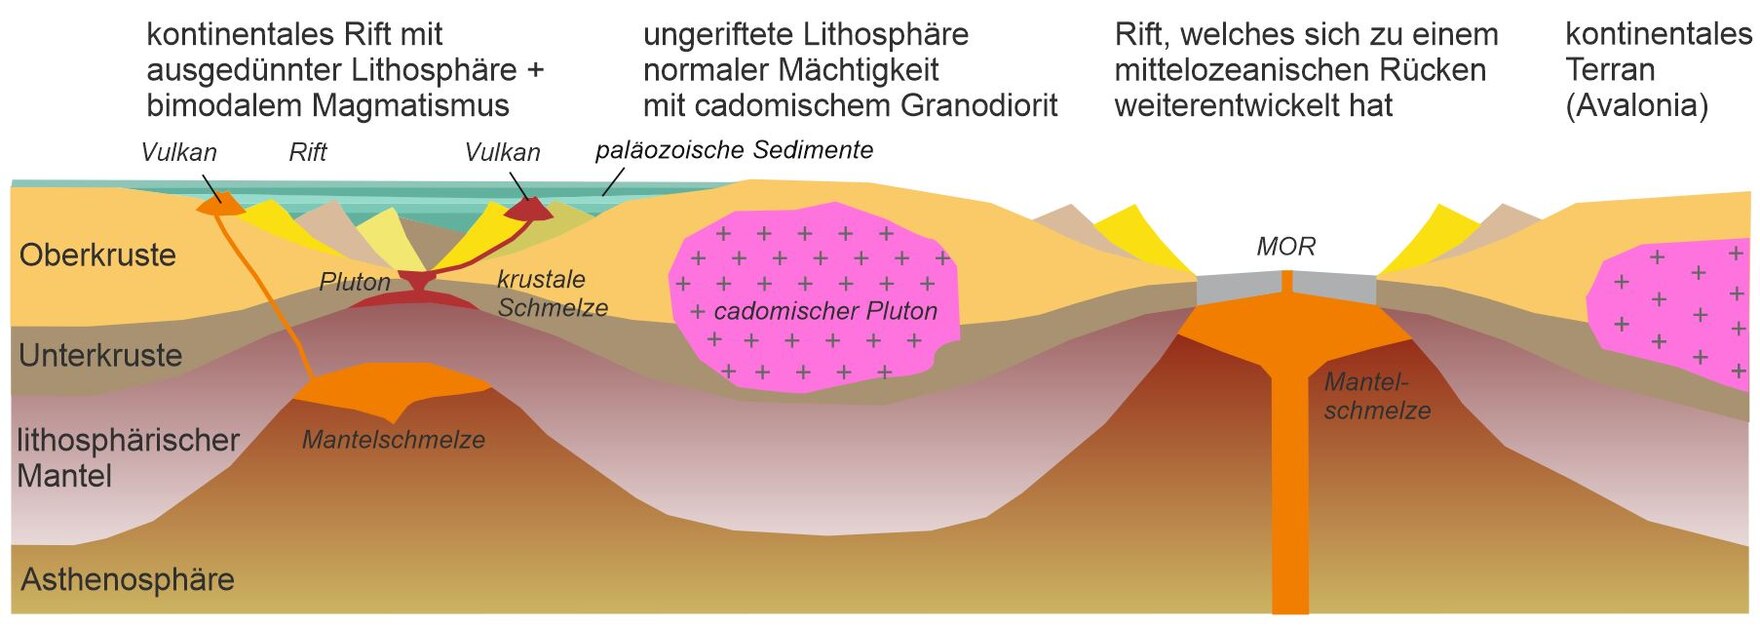 Profilschnitt der tektonischen Situation im Altpaläozoikum